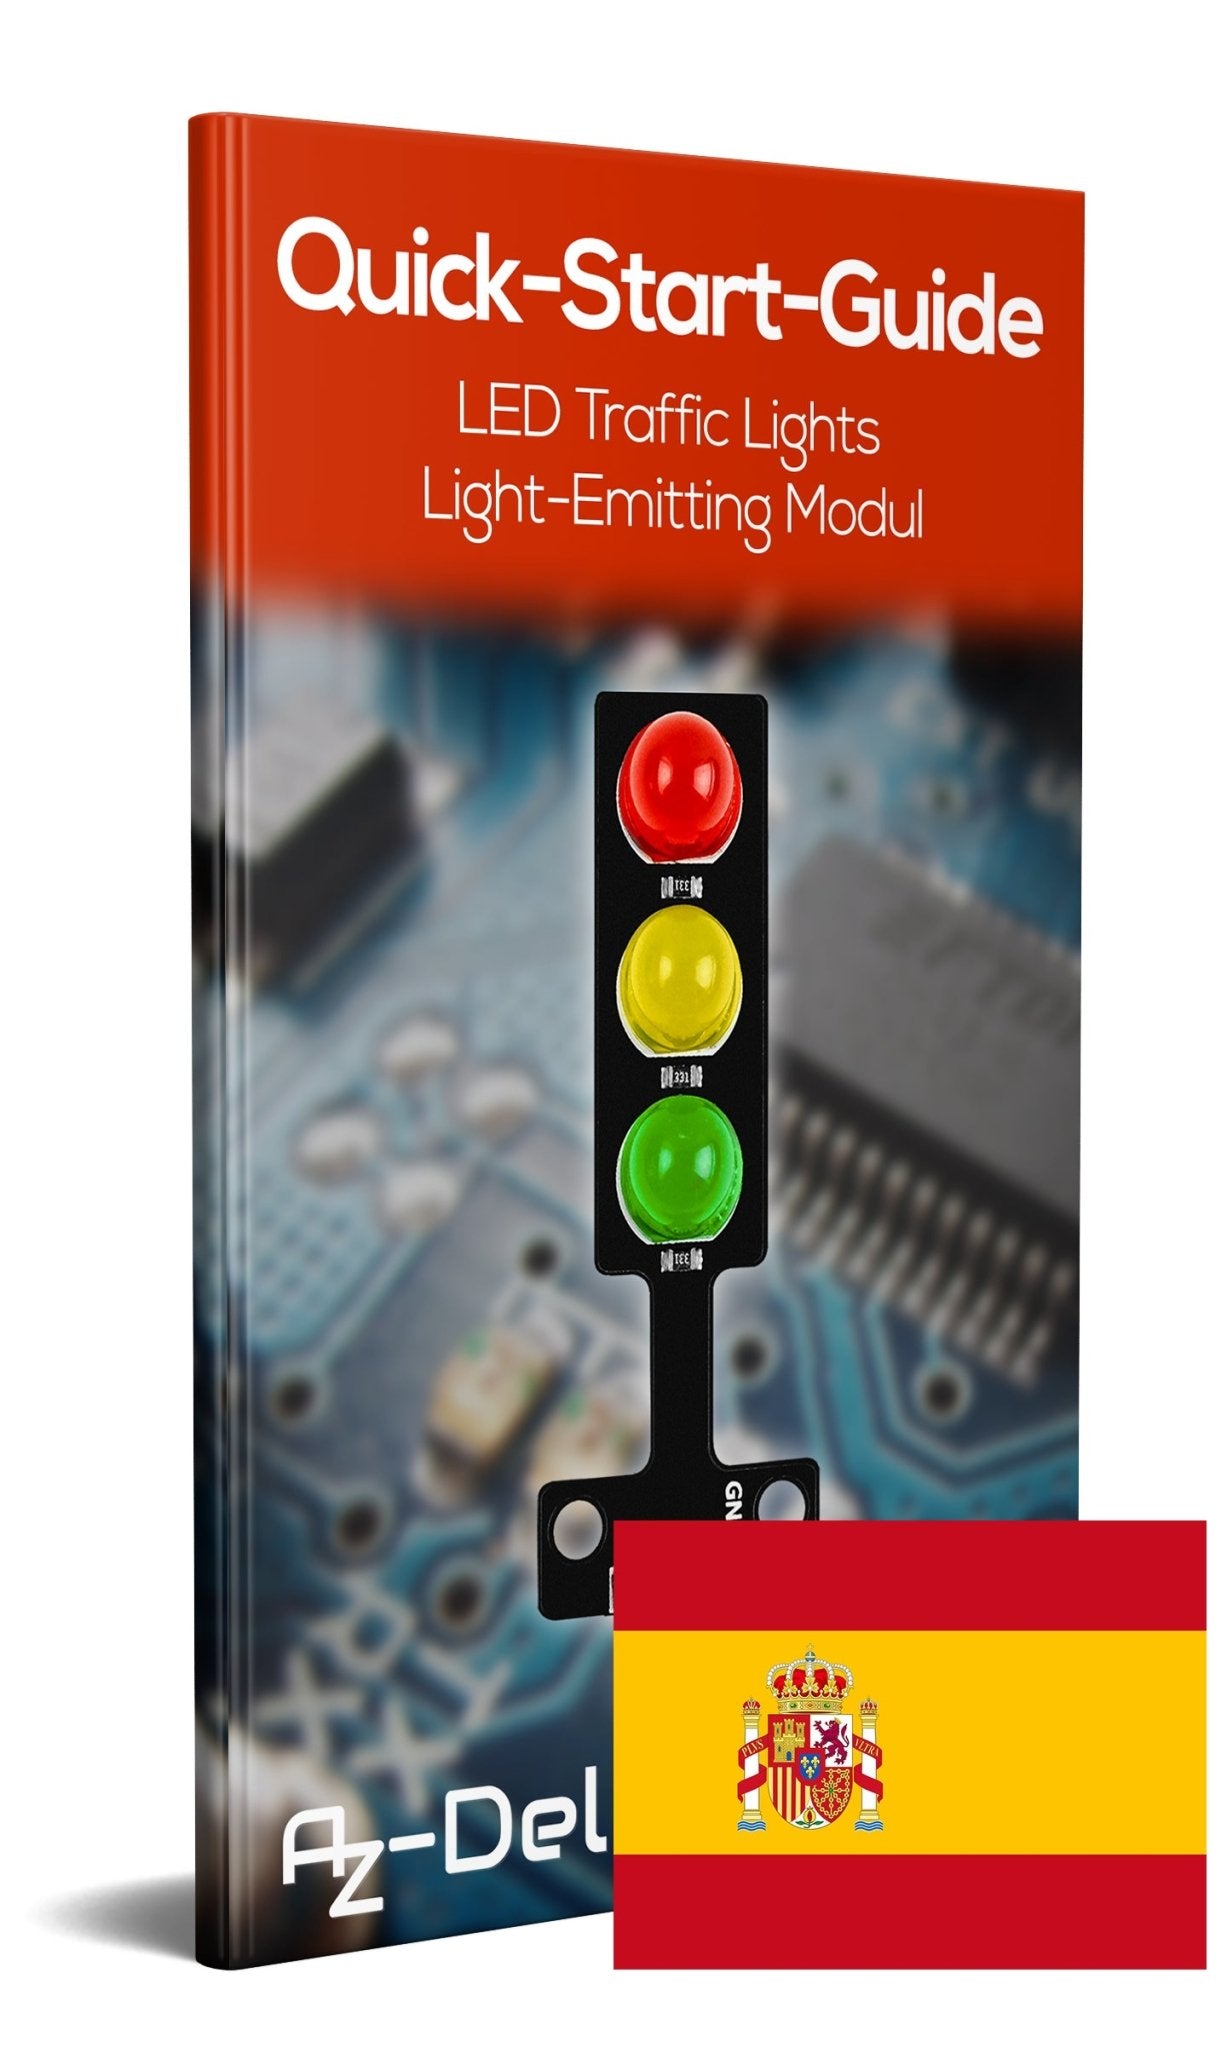 LED Ampel Modul - AZ-Delivery